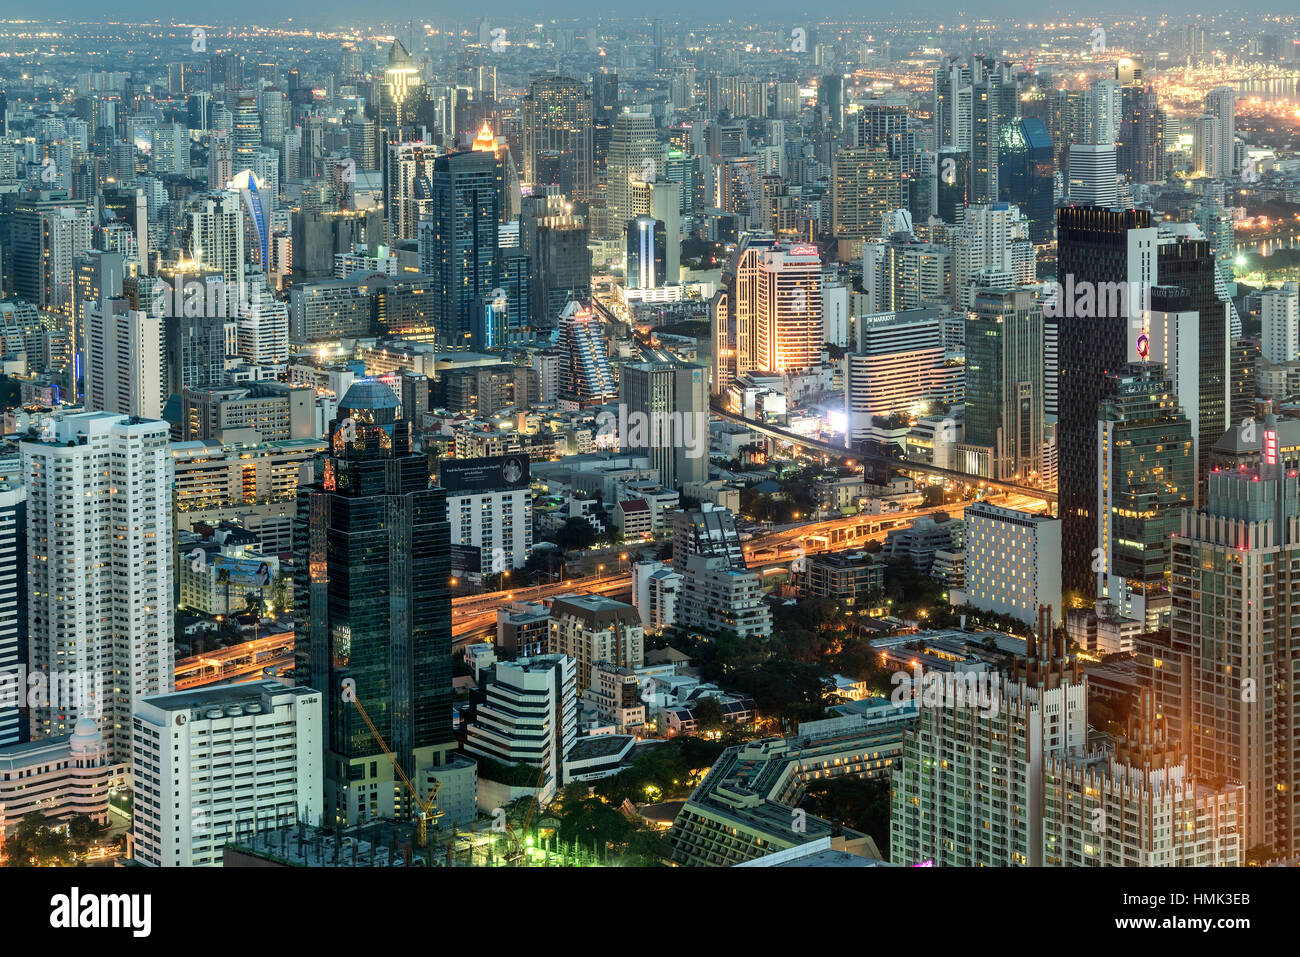 Skyline con rascacielos, iluminada calle, ciudad al anochecer, Bangkok, Tailandia Foto de stock